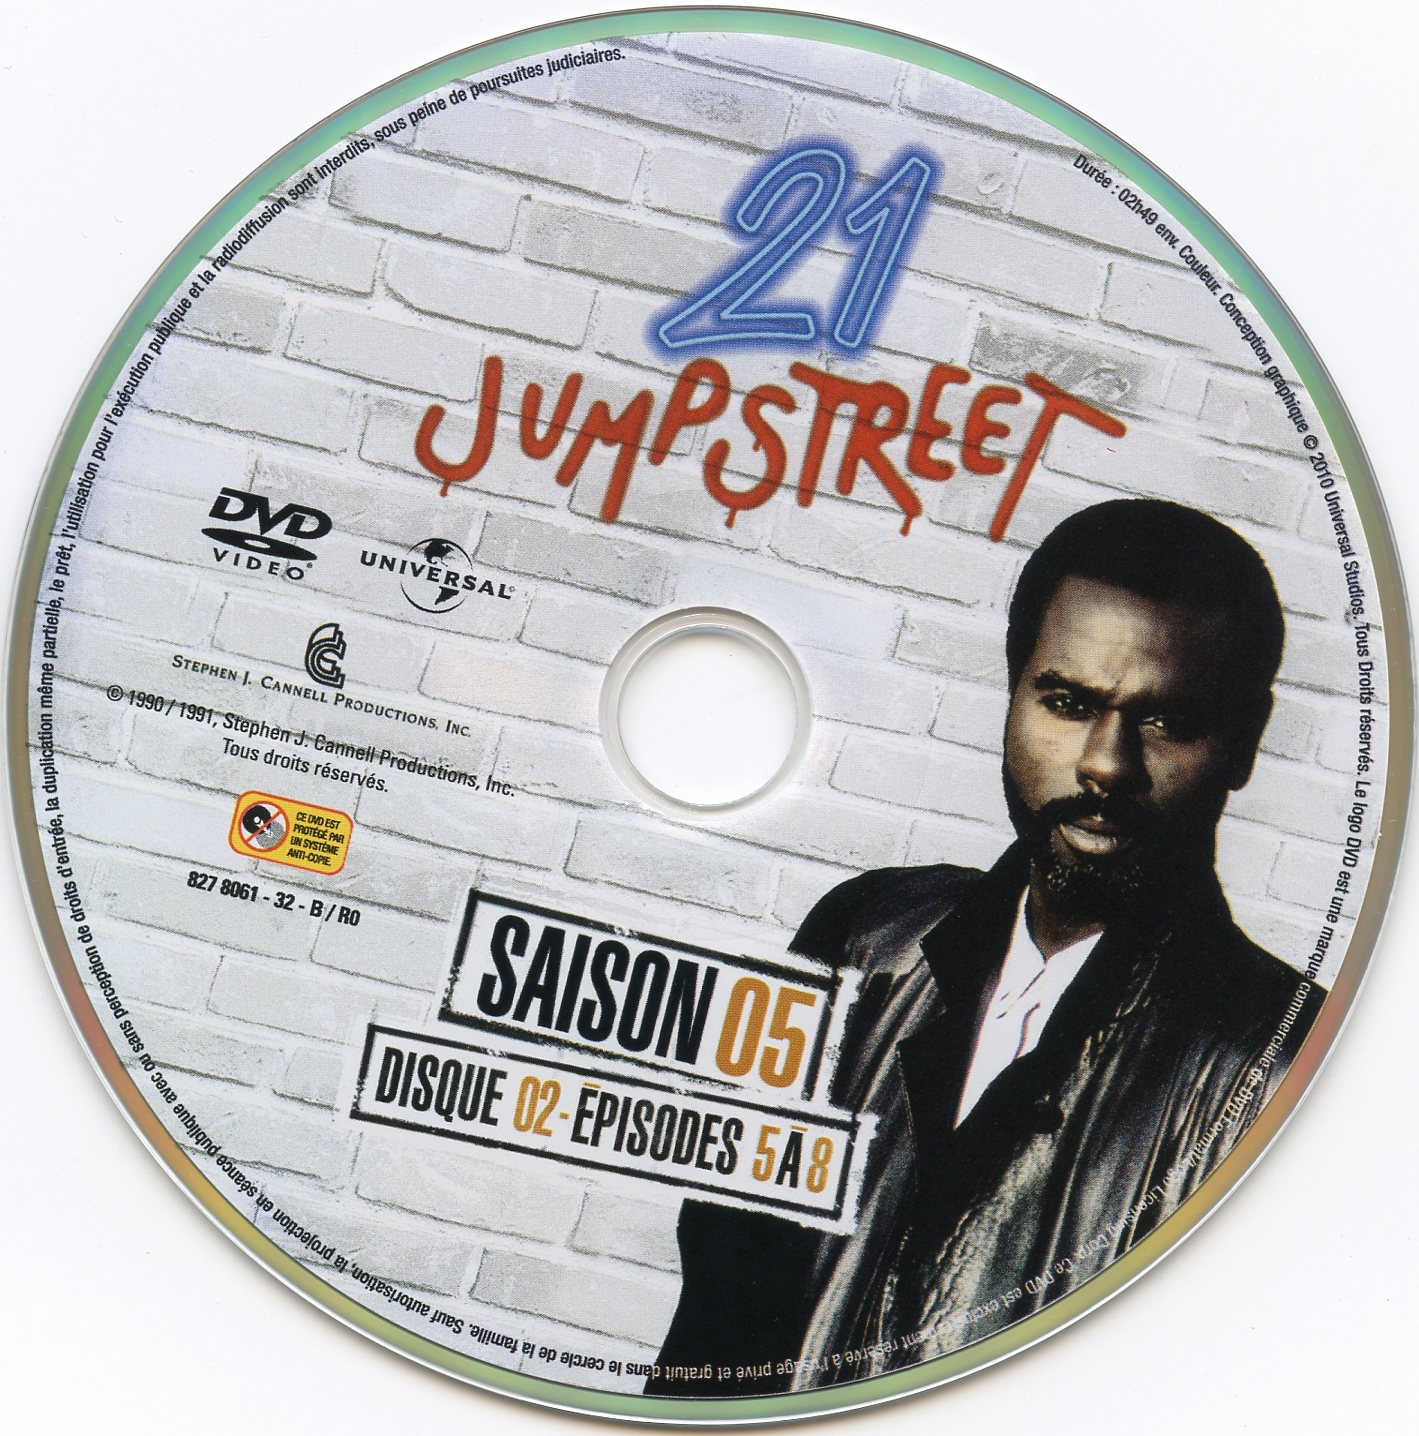 21 jump street Saison 5 DVD 2